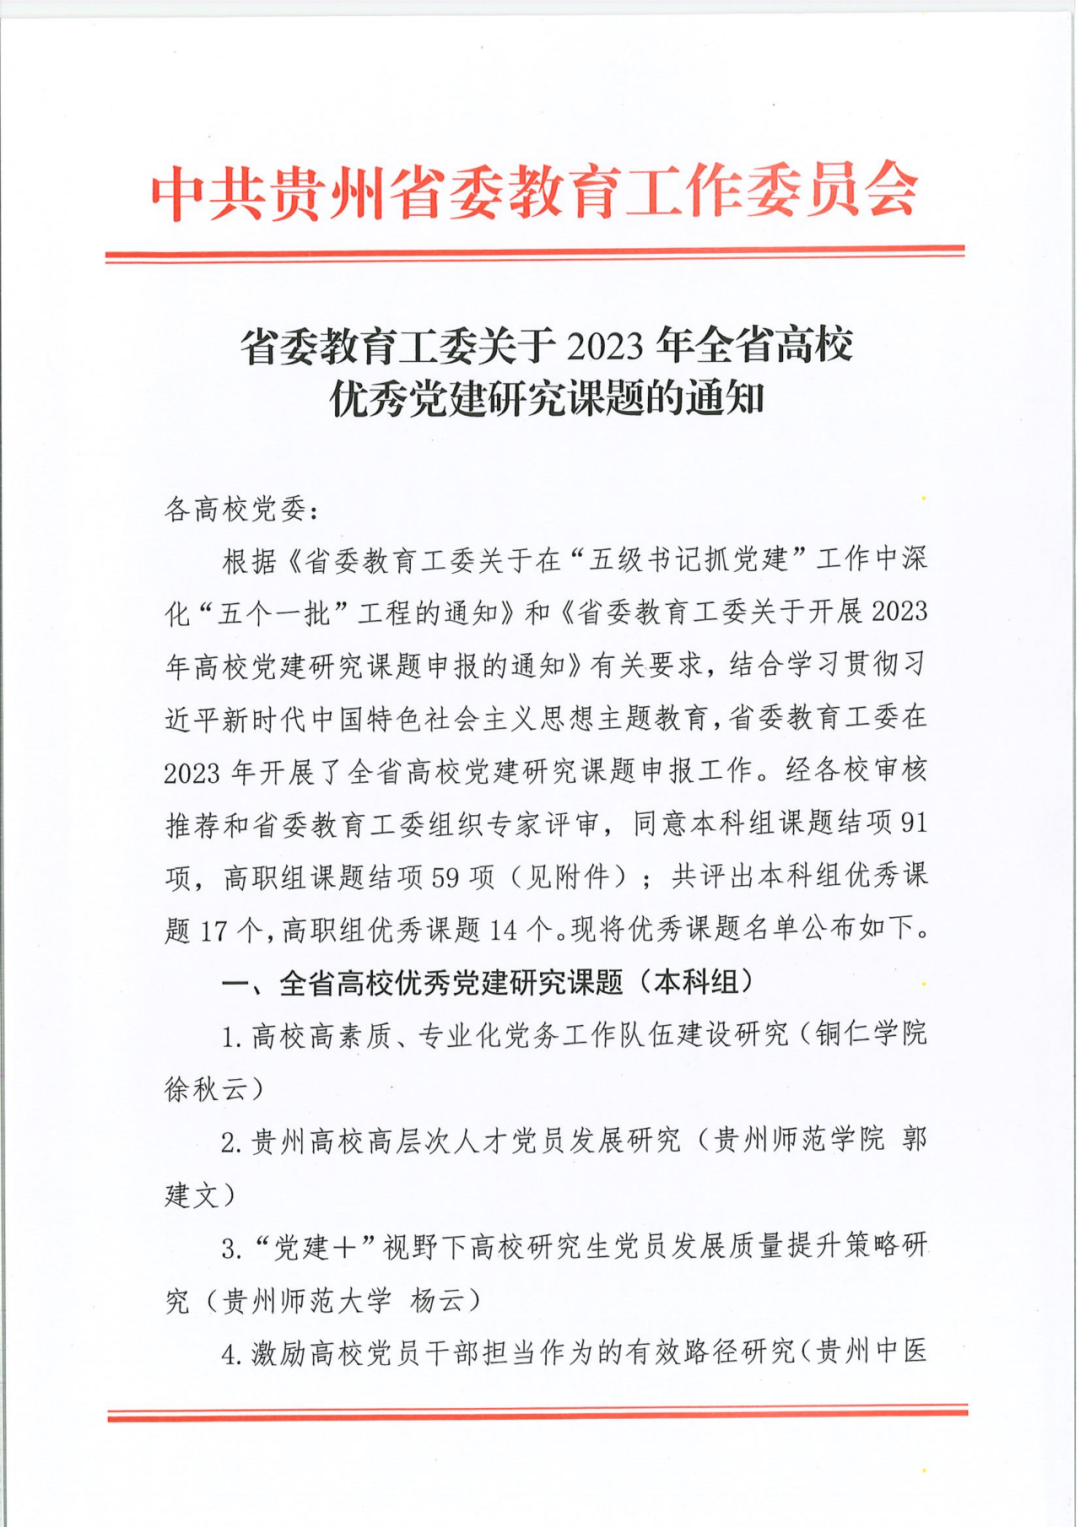 贵州工商职业学院荣获全省高校优秀党建研究课题结项3项